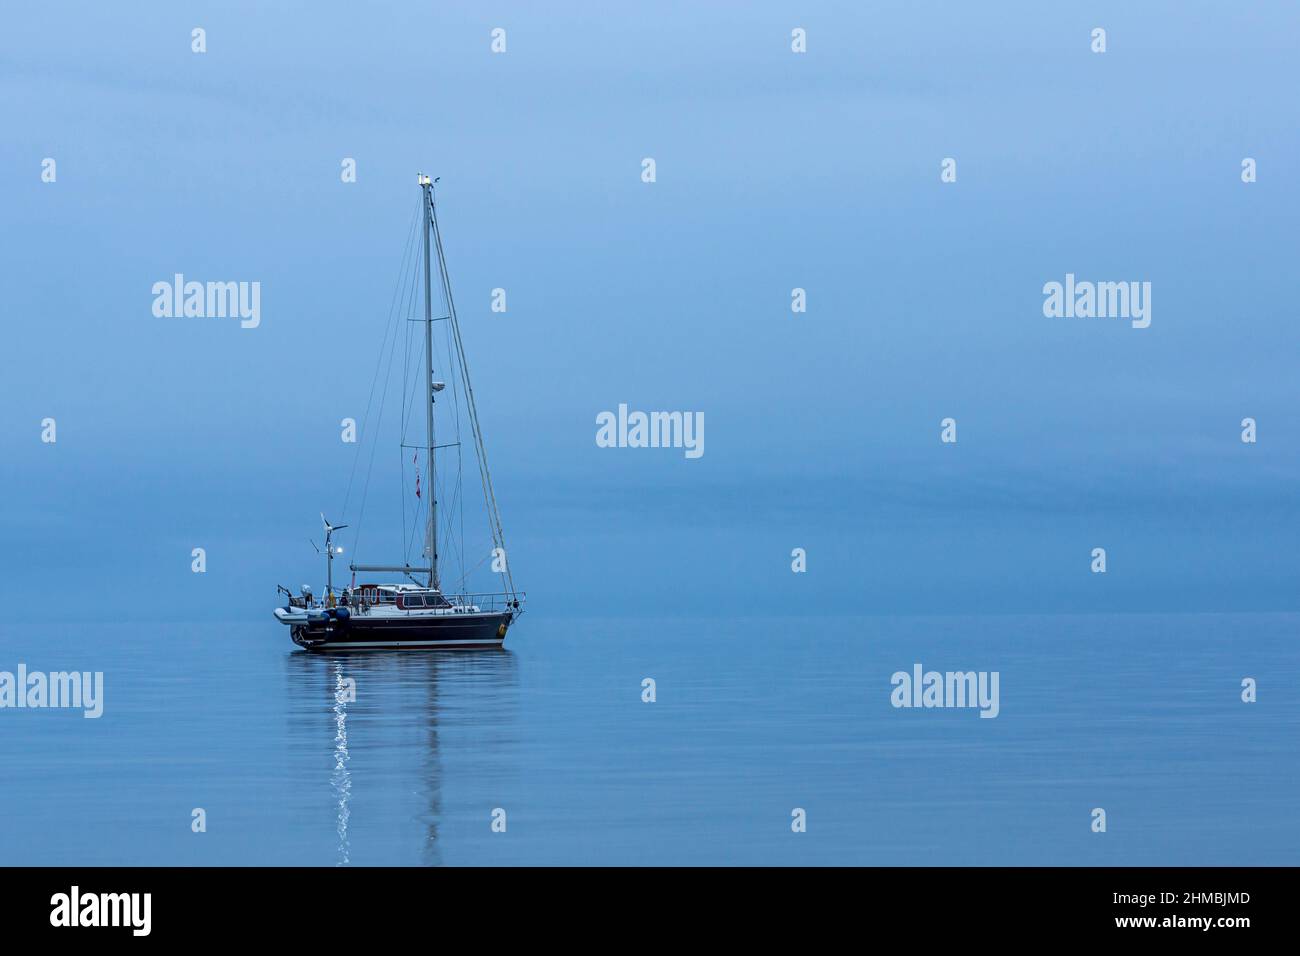 Das schwarze Segelboot ist allein und spiegelt sich während der blauen Stunde im ruhigen Meer wider, Dänemark, 30. August 2017 Stockfoto